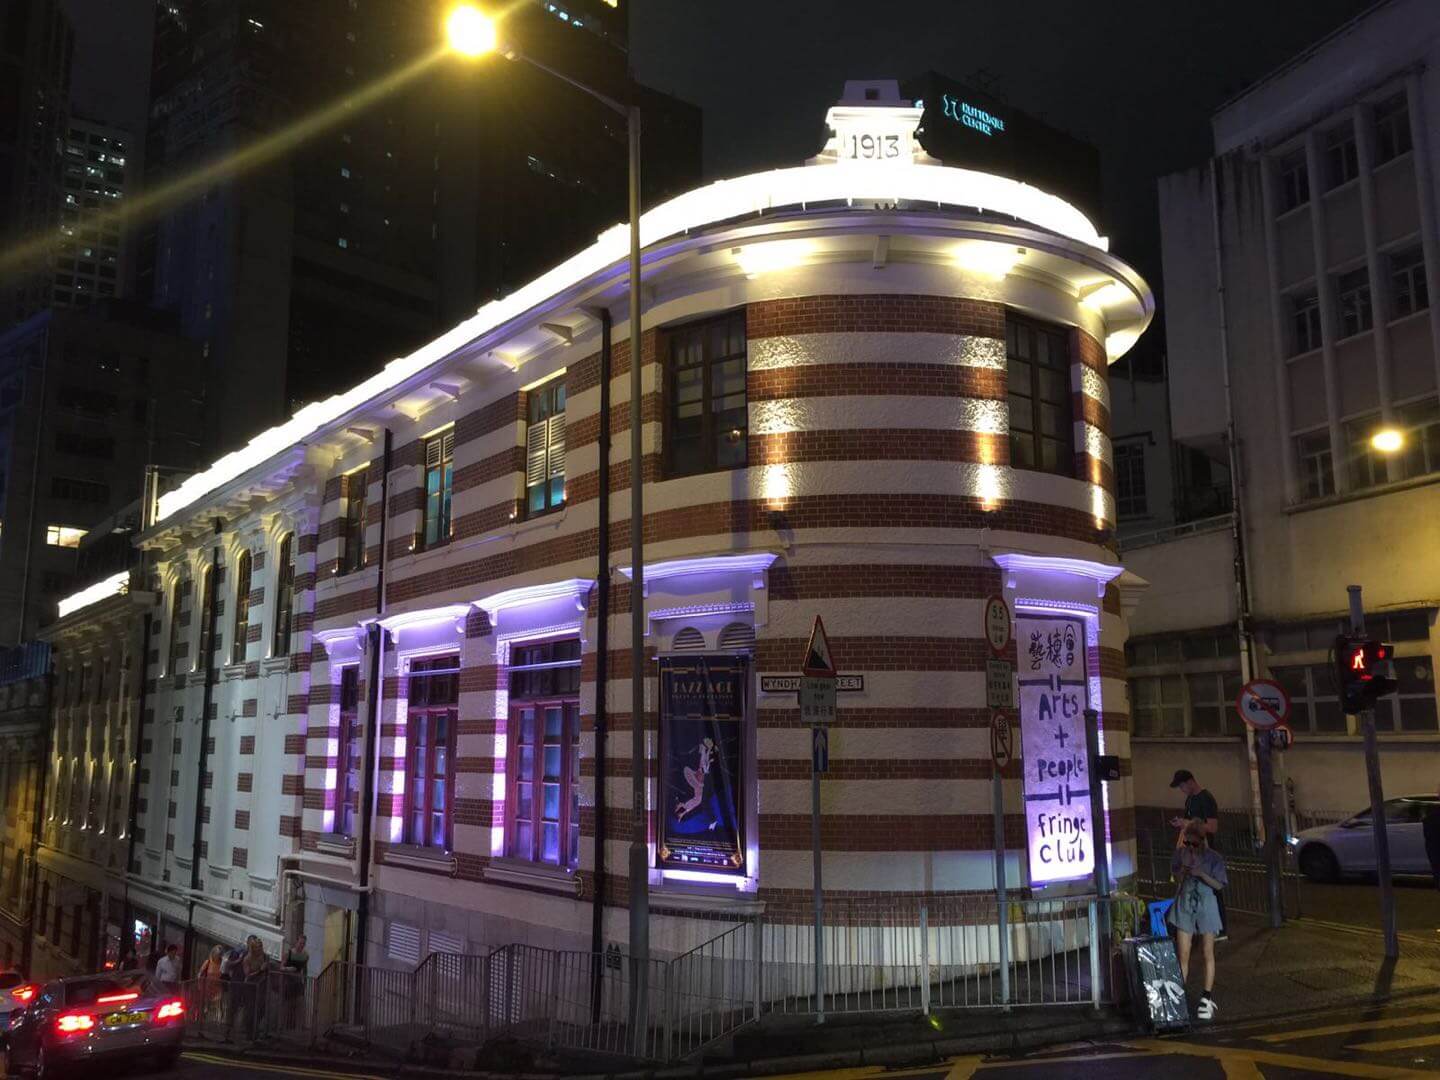 Fringe Club Hong Kong (Eng Hin)